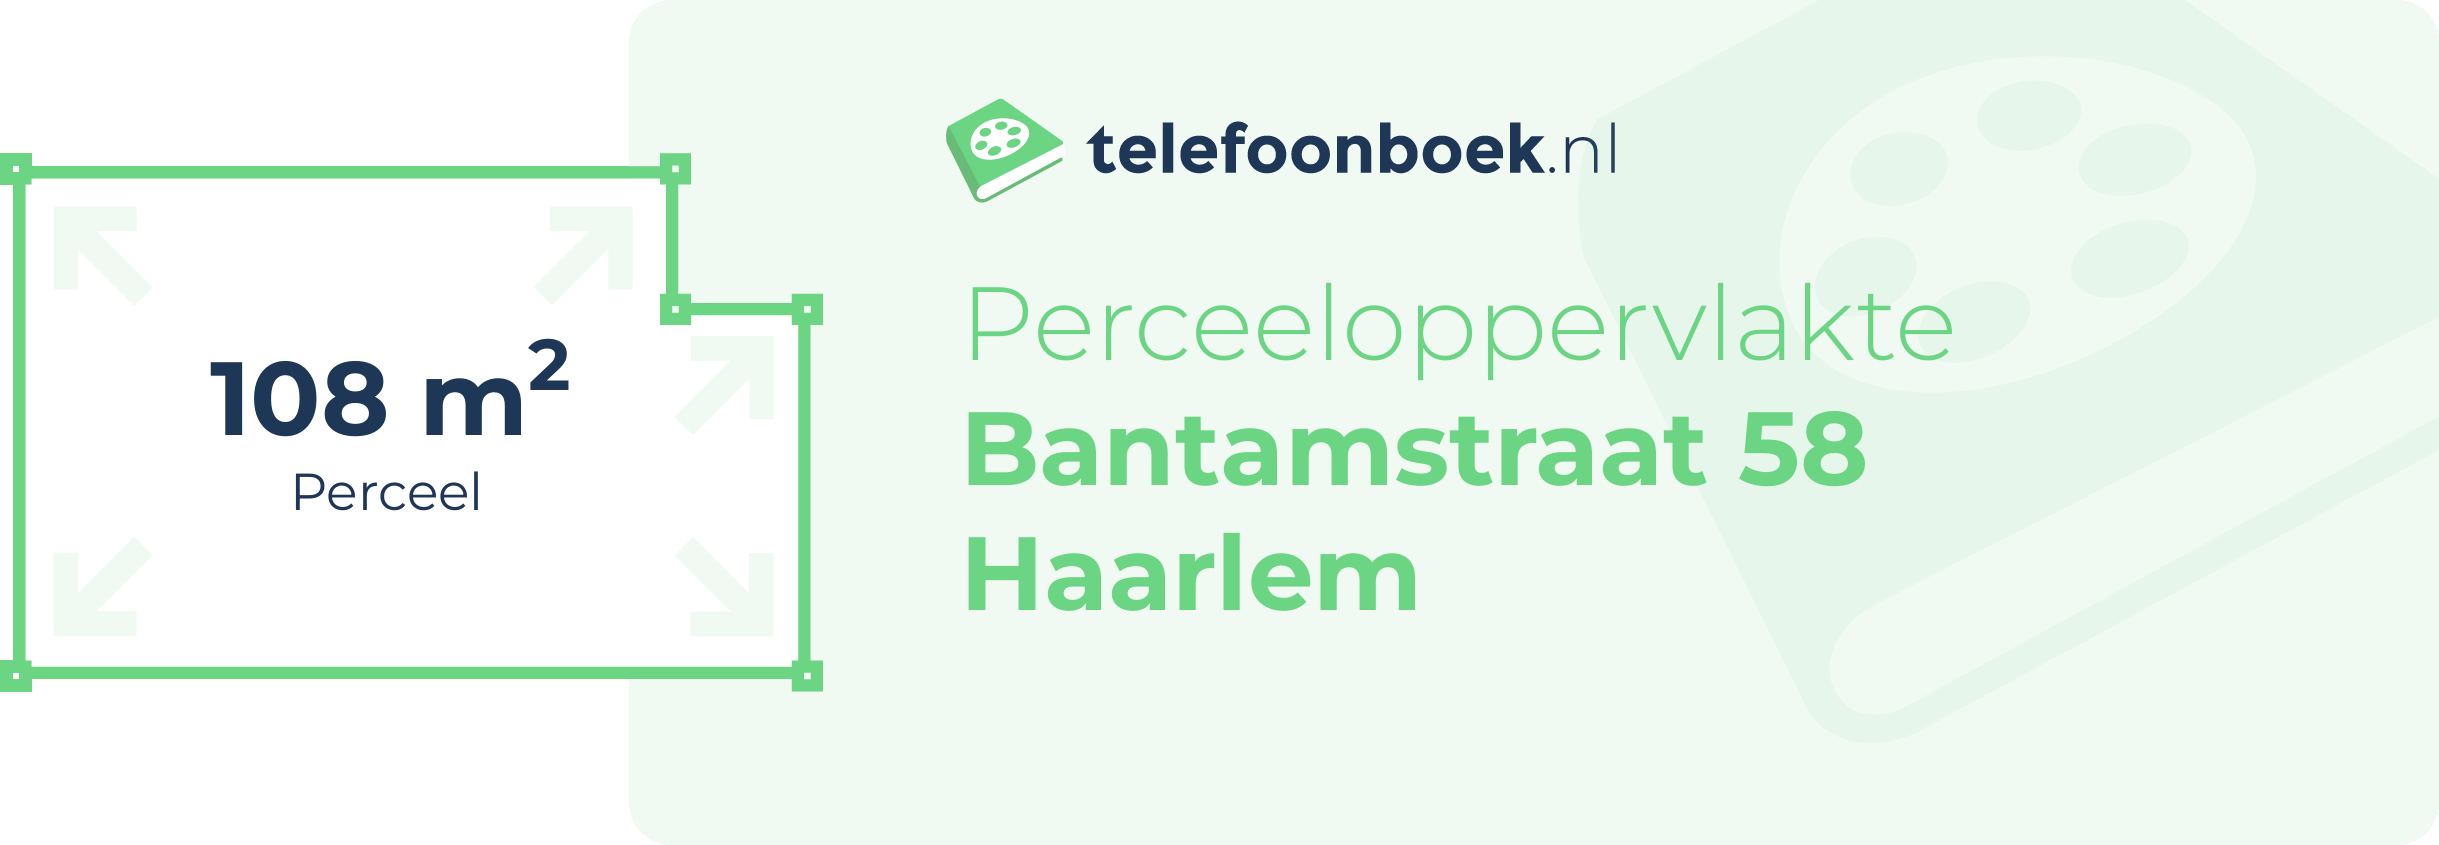 Perceeloppervlakte Bantamstraat 58 Haarlem